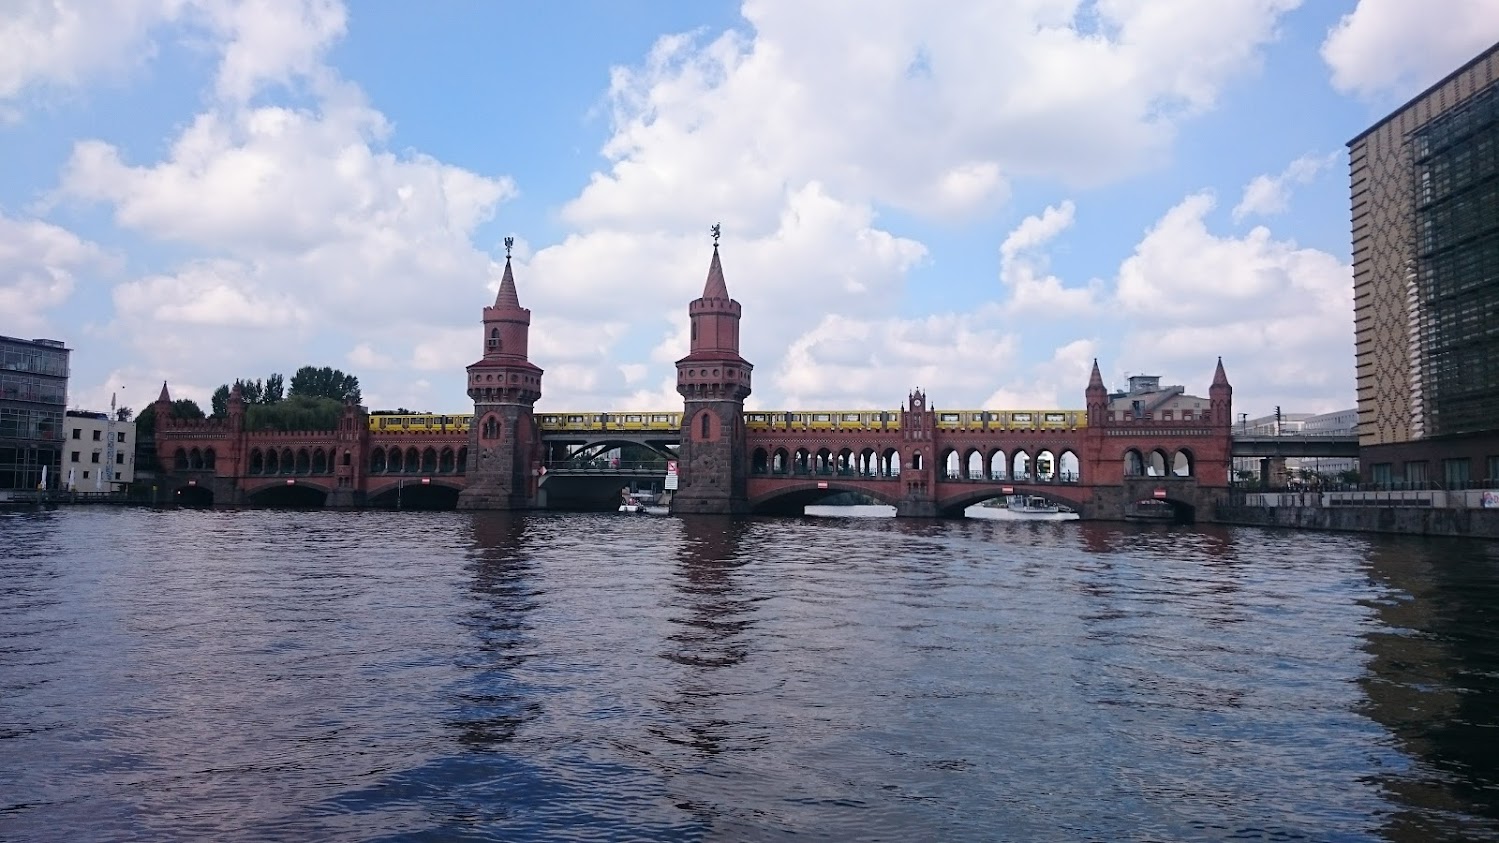 Oberbaumbrücke in Berlin